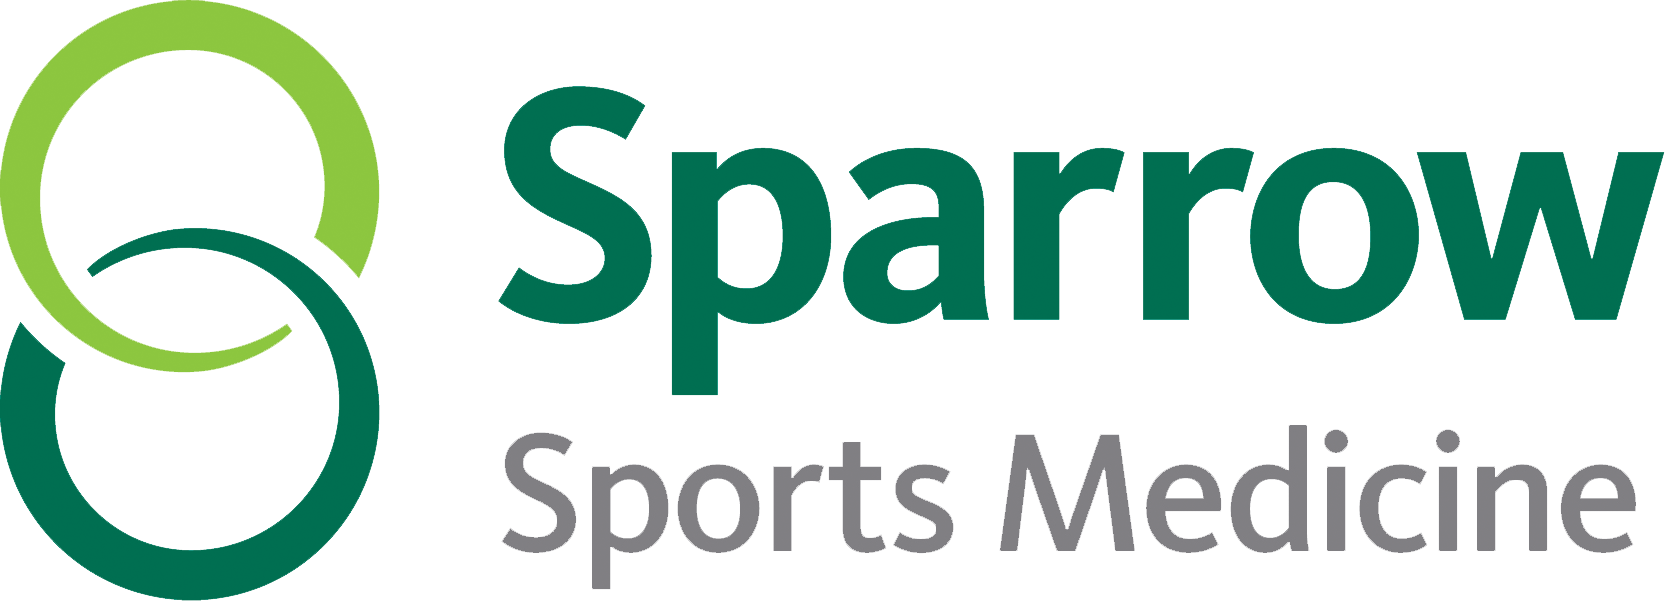 Sparrow Sports Medicine